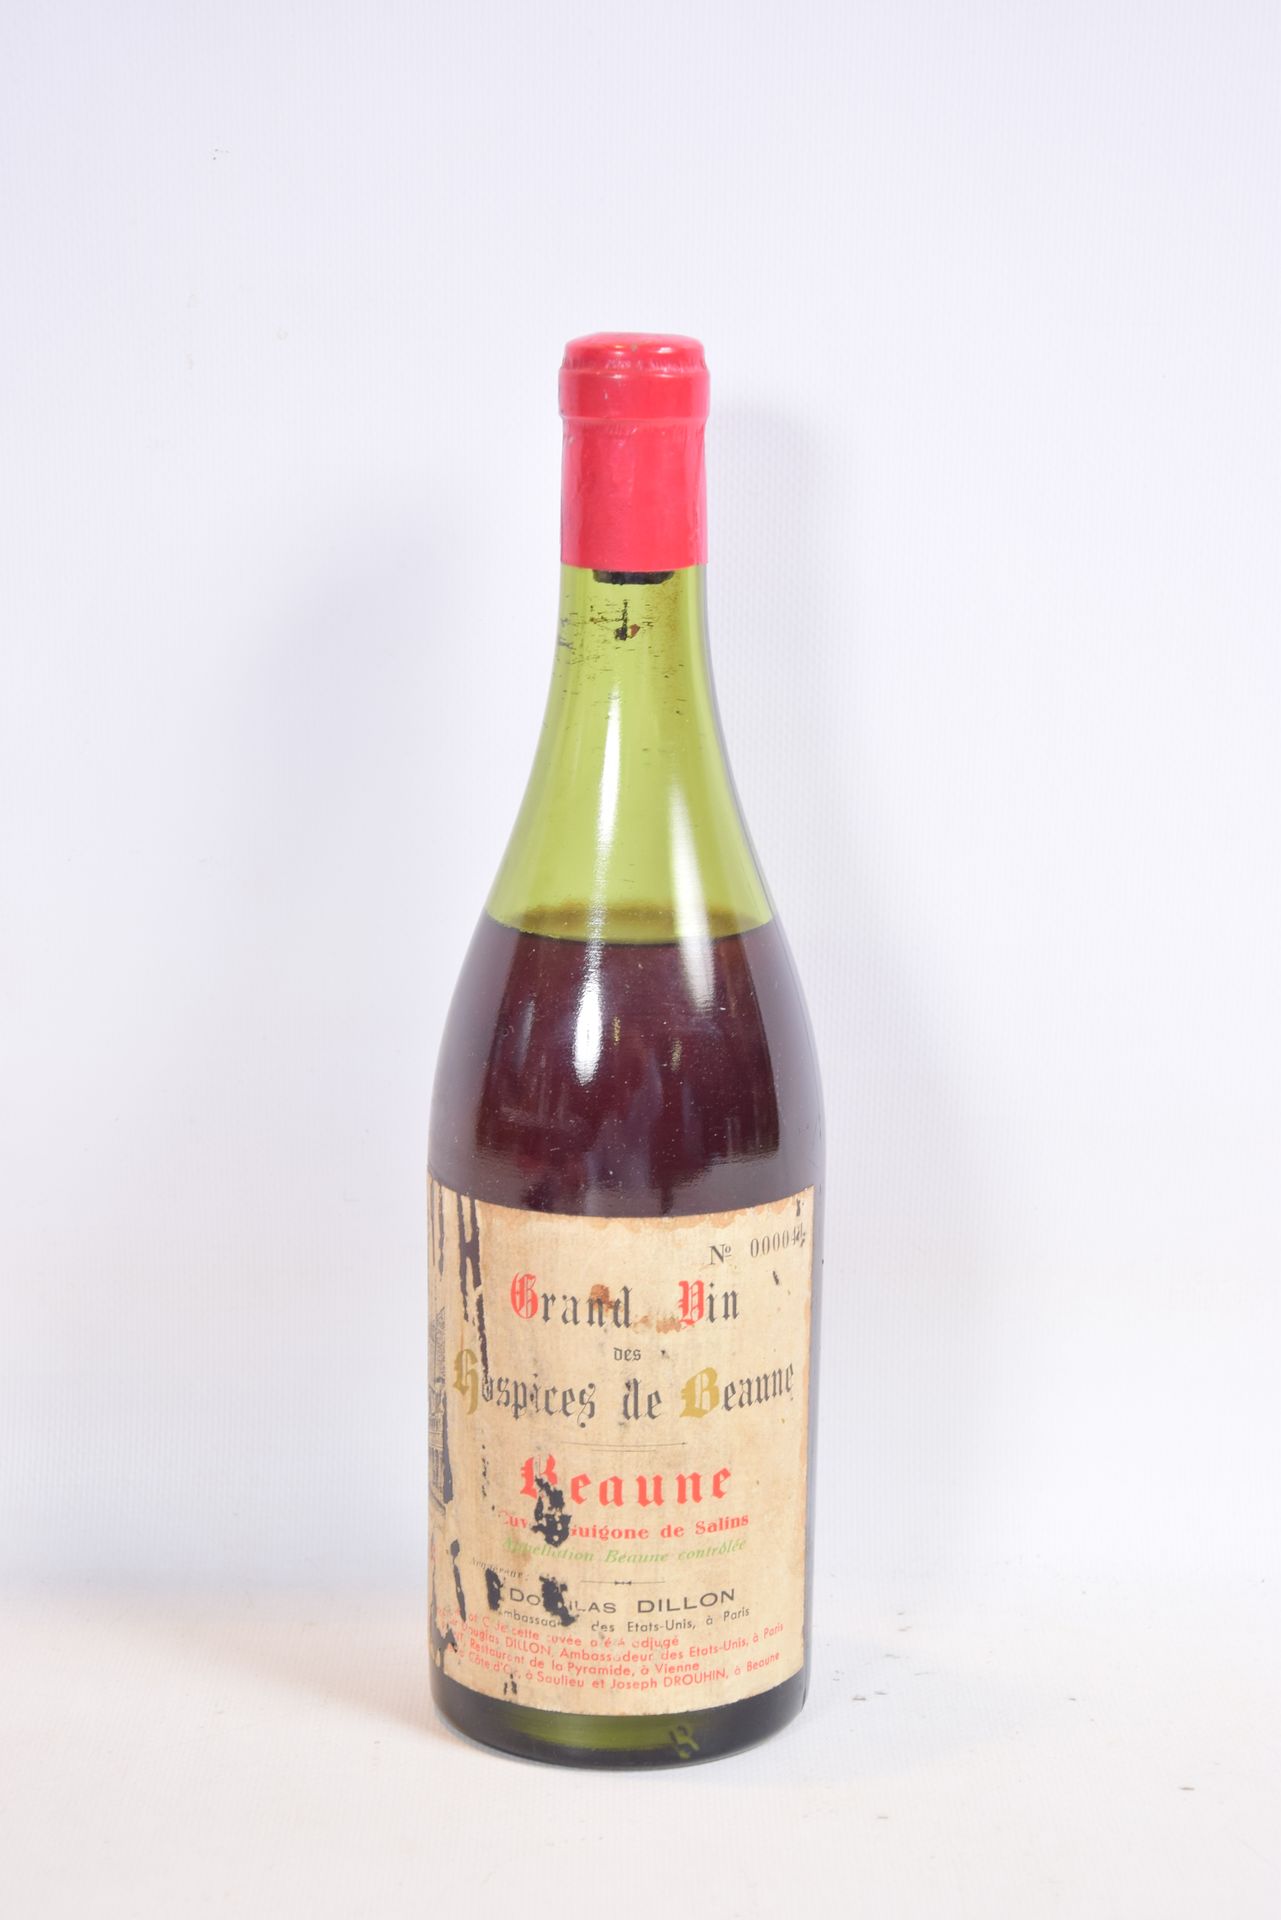 Null 1 Blle BEAUNE - Hospices de Beaune - Cuvée Guigone de Salins授予1959年？

	道格拉斯&hellip;